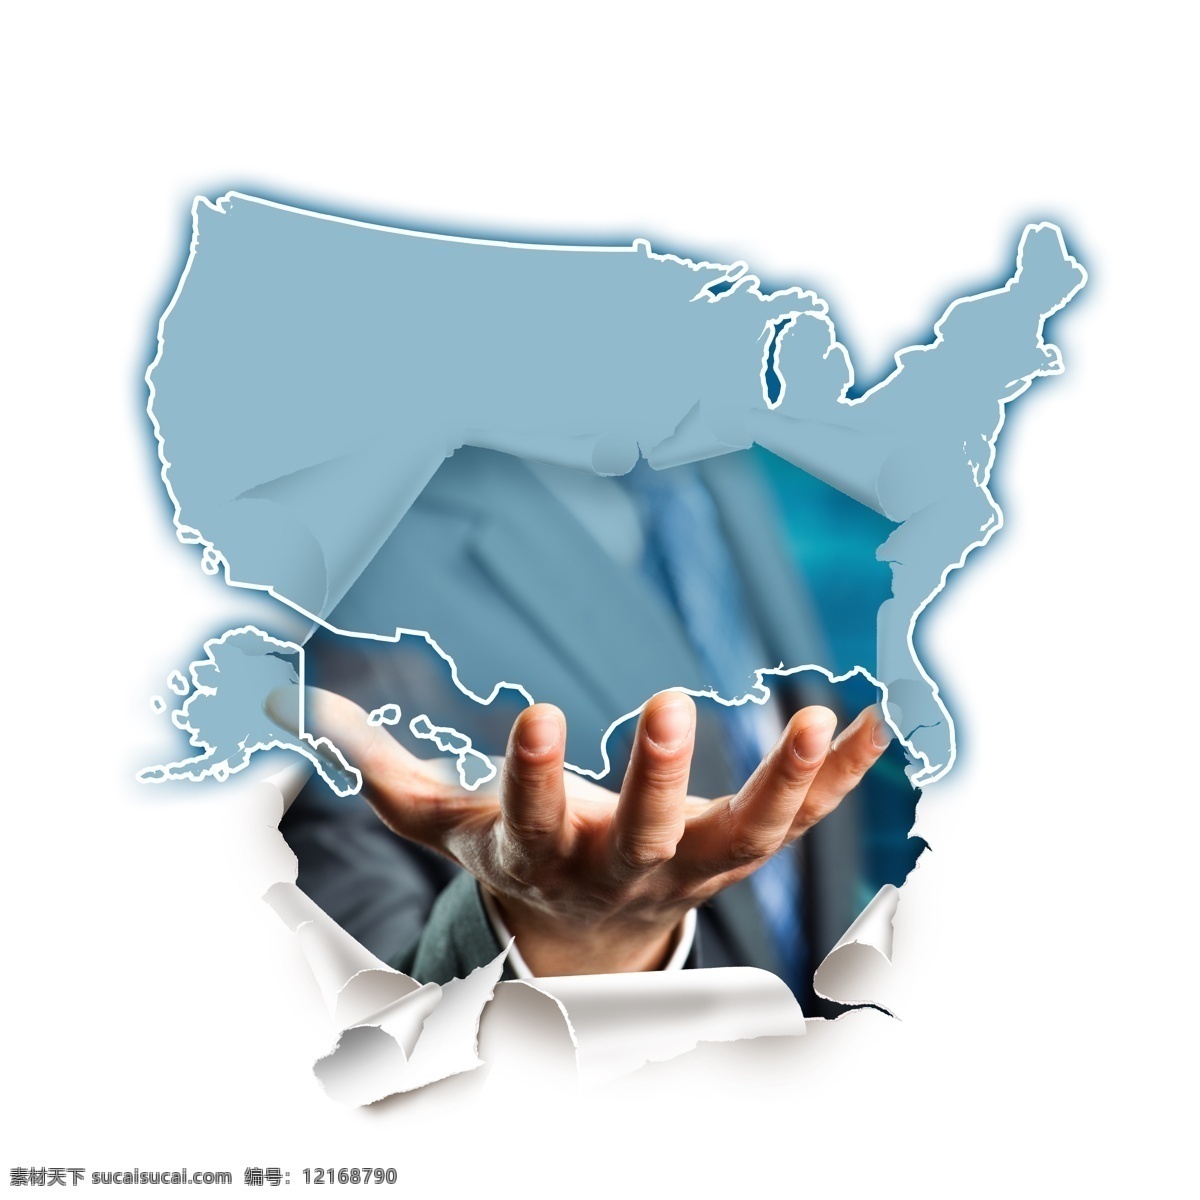 美国 地图 商务 男士 商务男士 职业人物 美国地图 职业男性 手捧着 手势 其他人物 人物图片